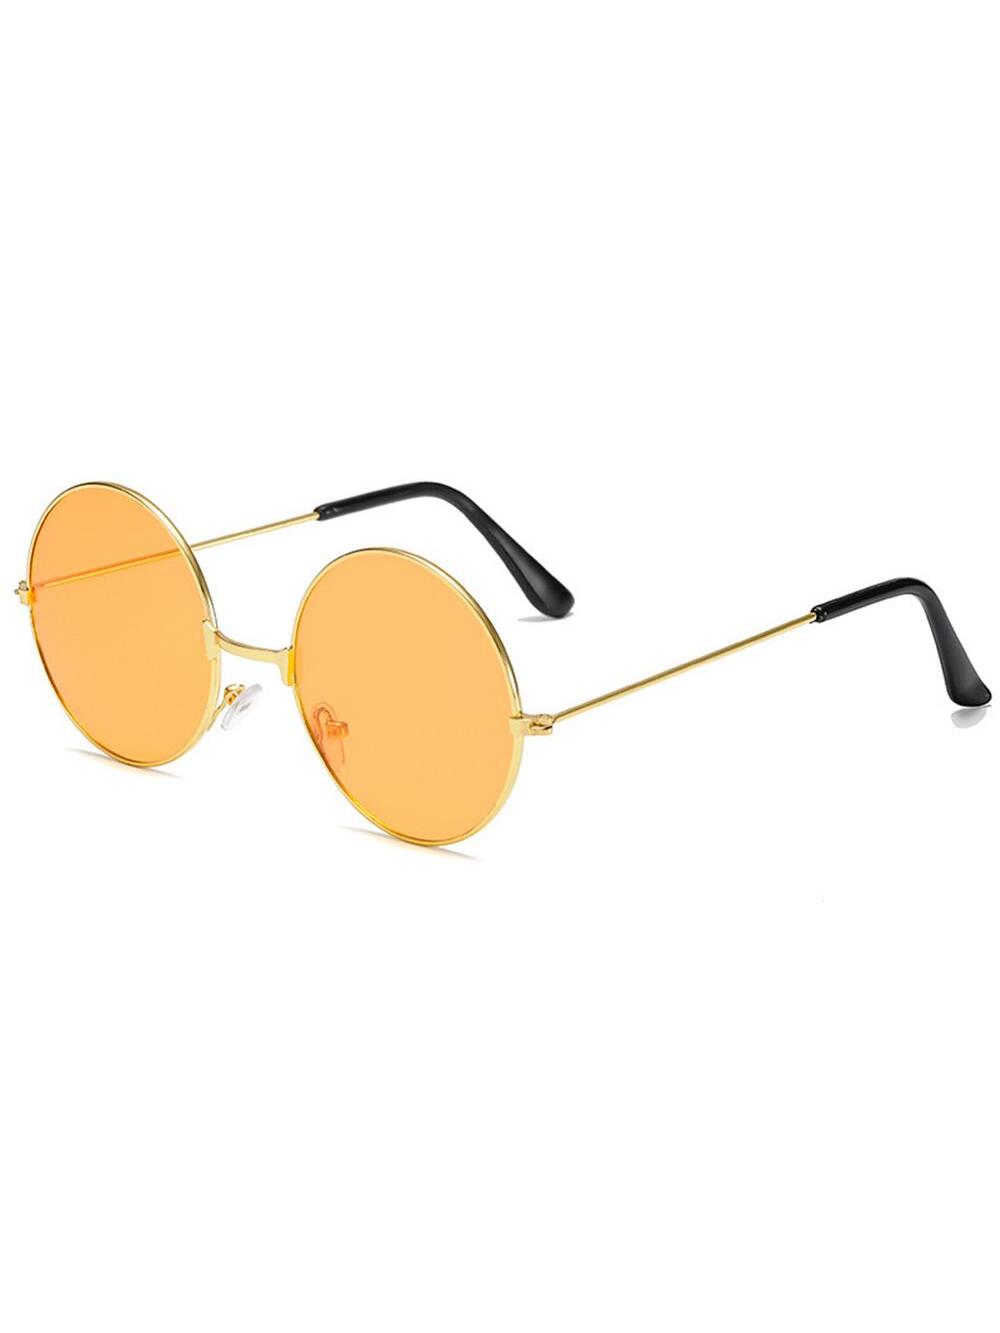 цена Ретро круглые солнцезащитные очки в стиле хиппи, апельсин